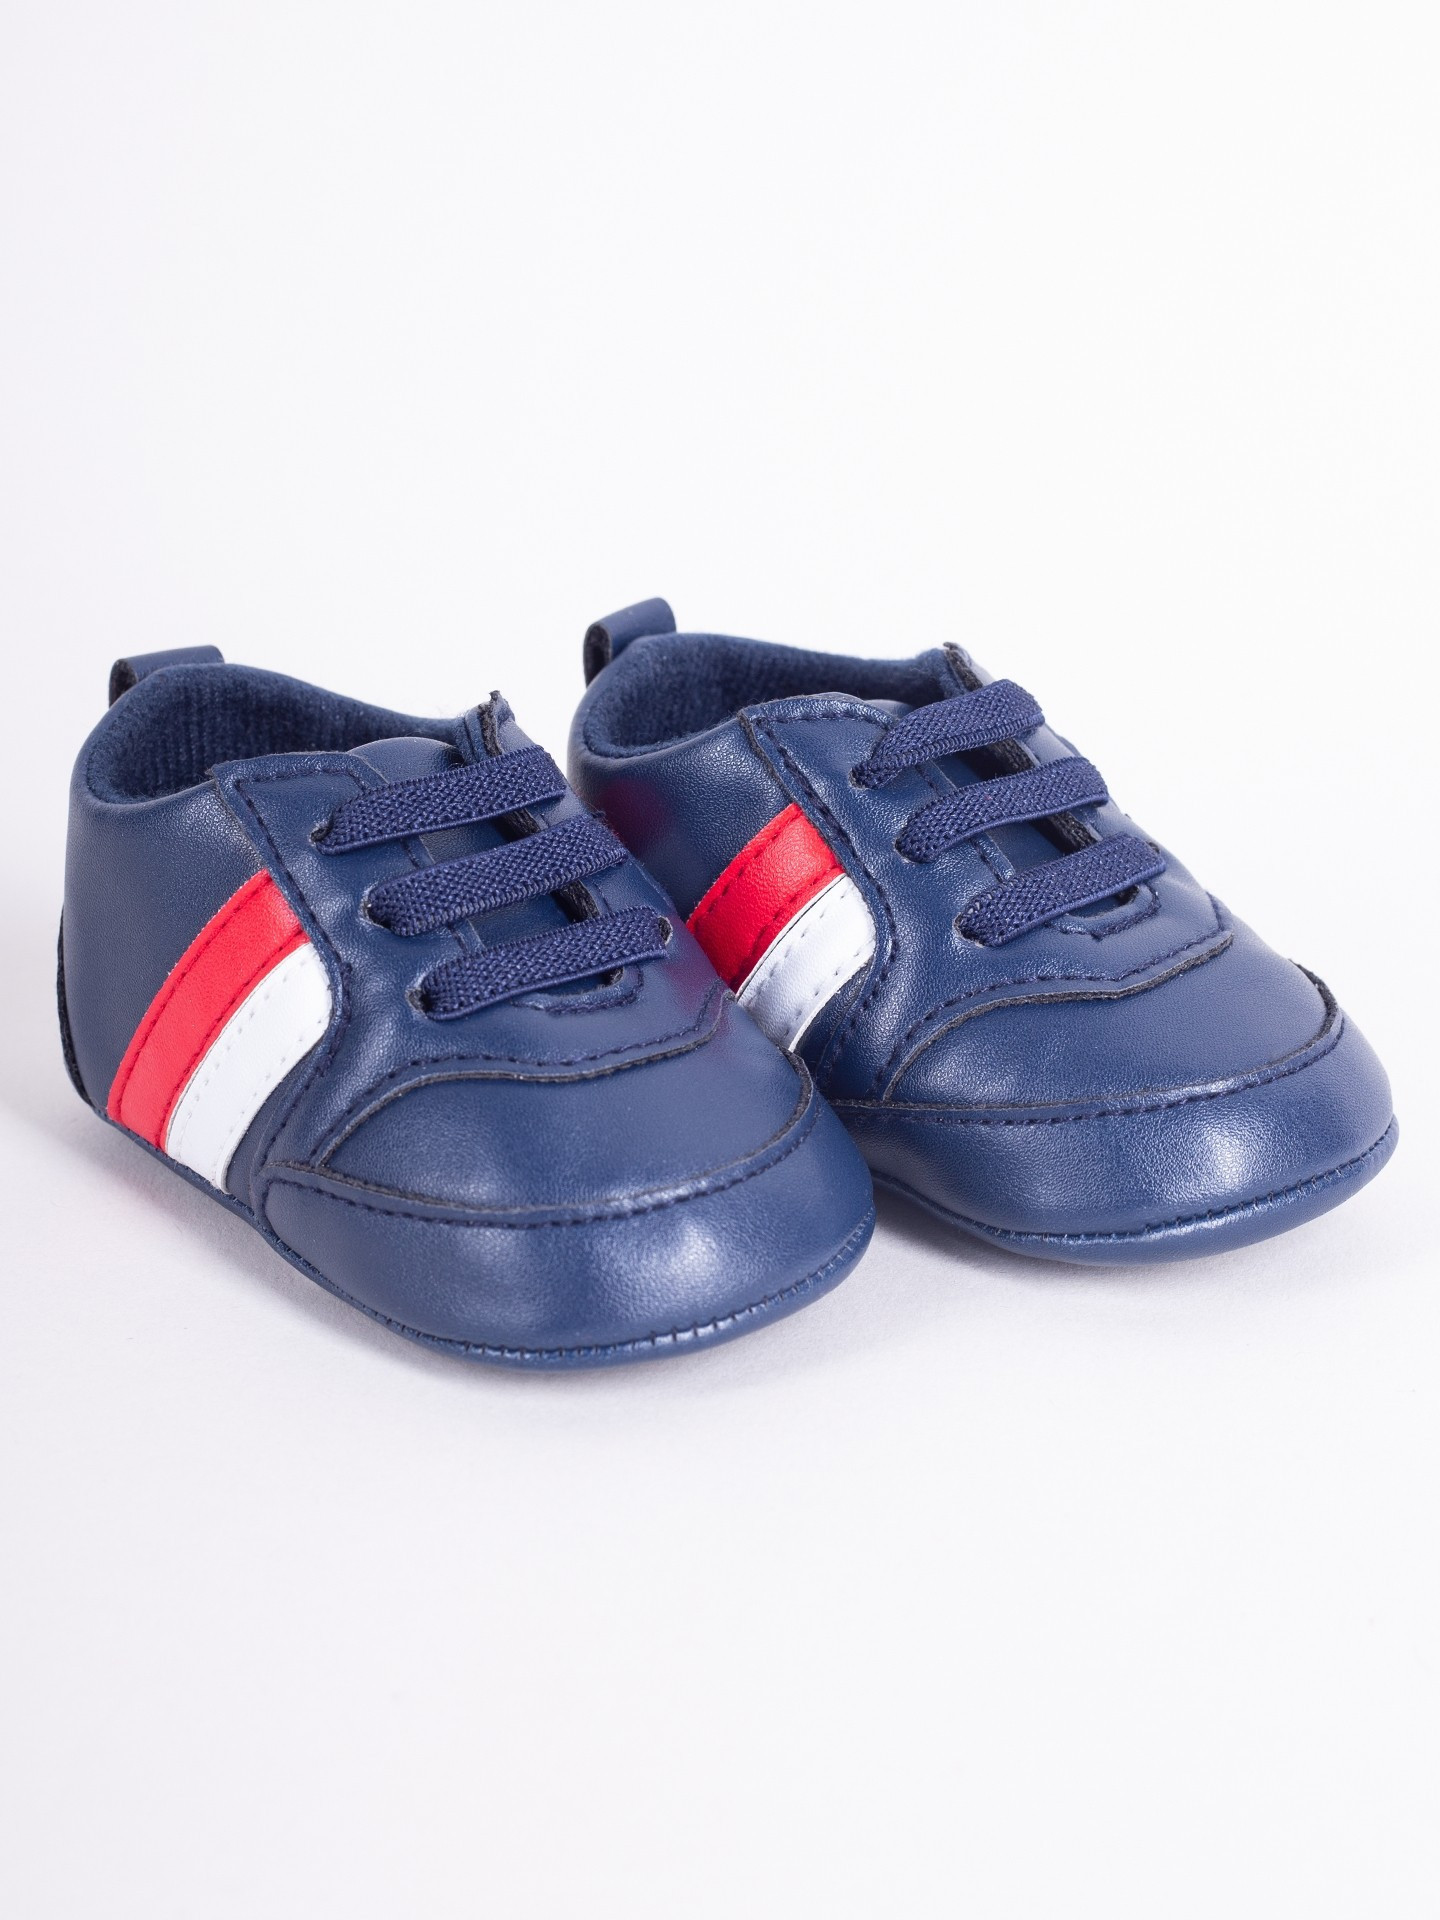 Yoclub Dětské chlapecké boty OBO-0207C-6100 Navy Blue 0-6 měsíců